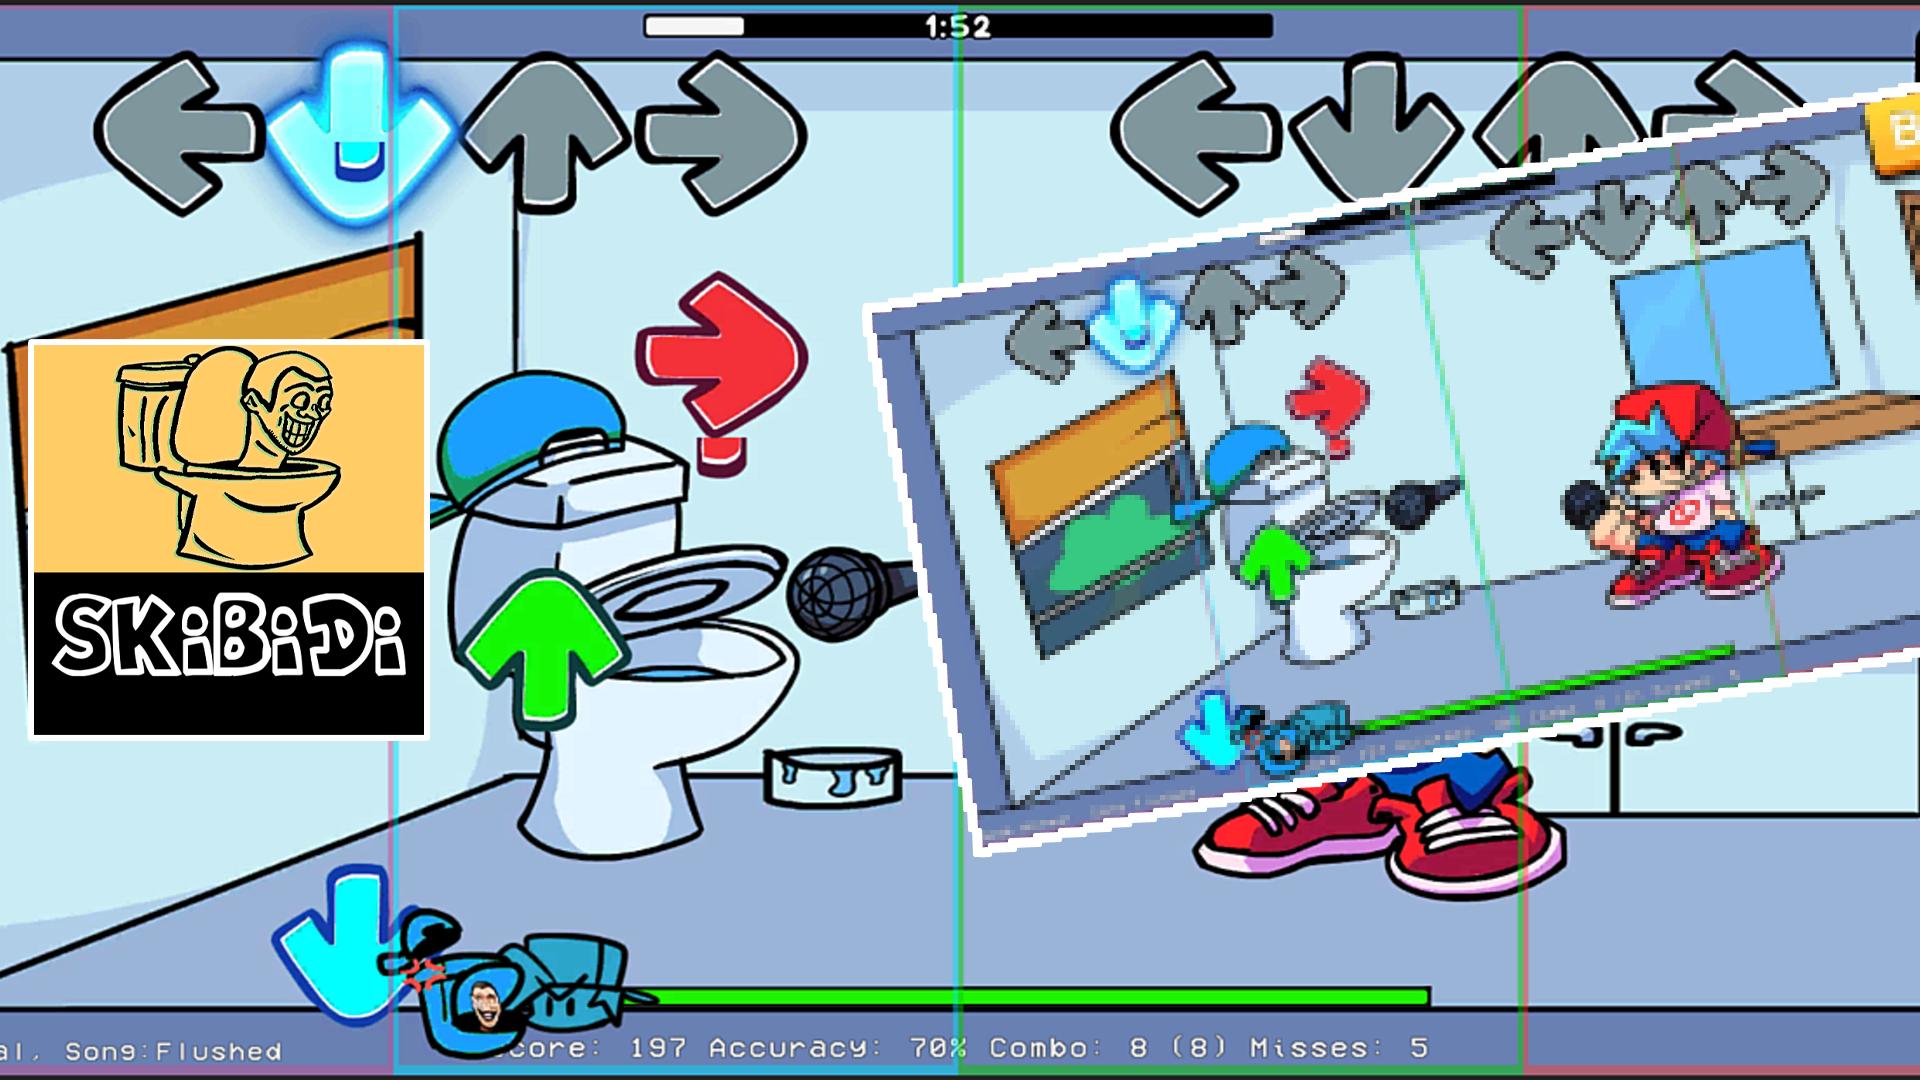 Скиби туалет в графическом редакторе. Файлы игры туалет лаборатория. Защита башни туалета Skibi коды. Взломанная игра туалет лаборатория. Игру туалет файв